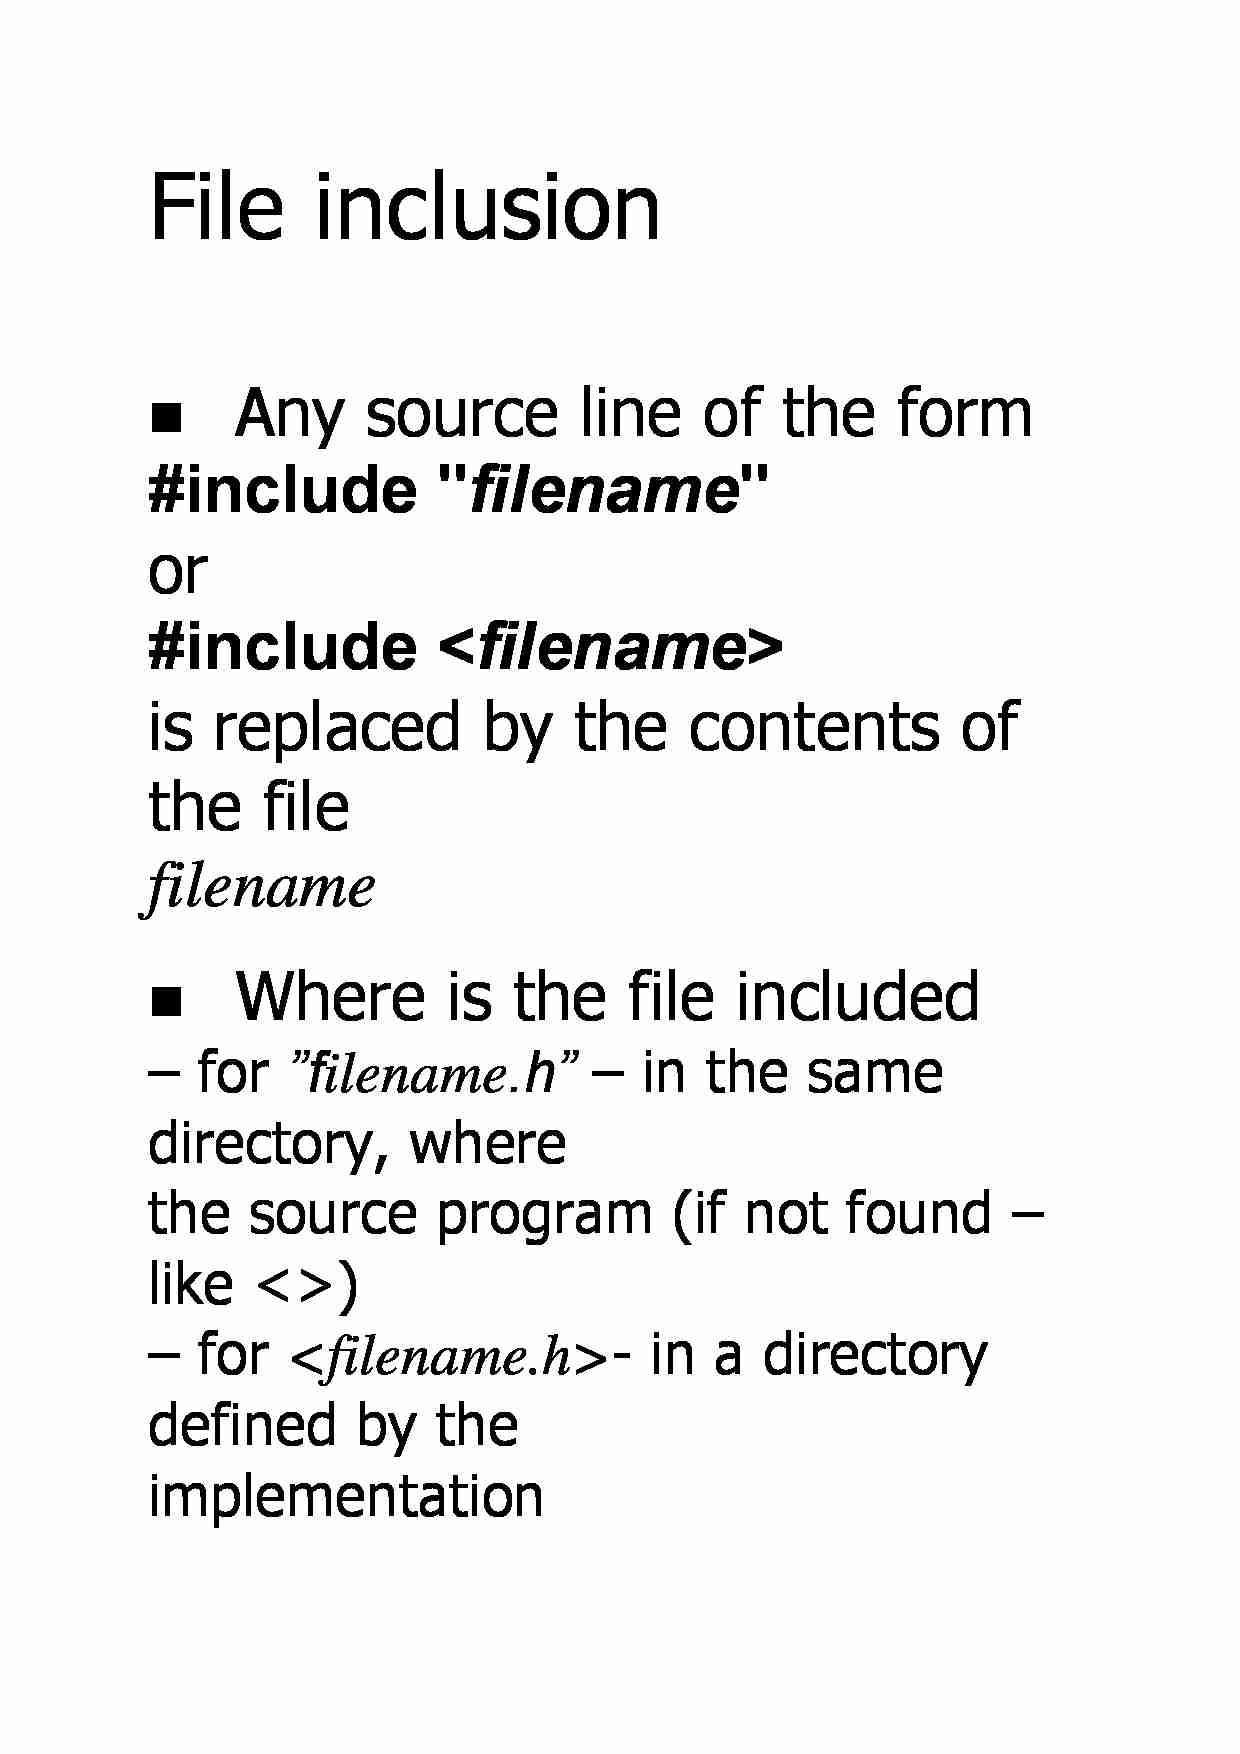 File inclusion - strona 1